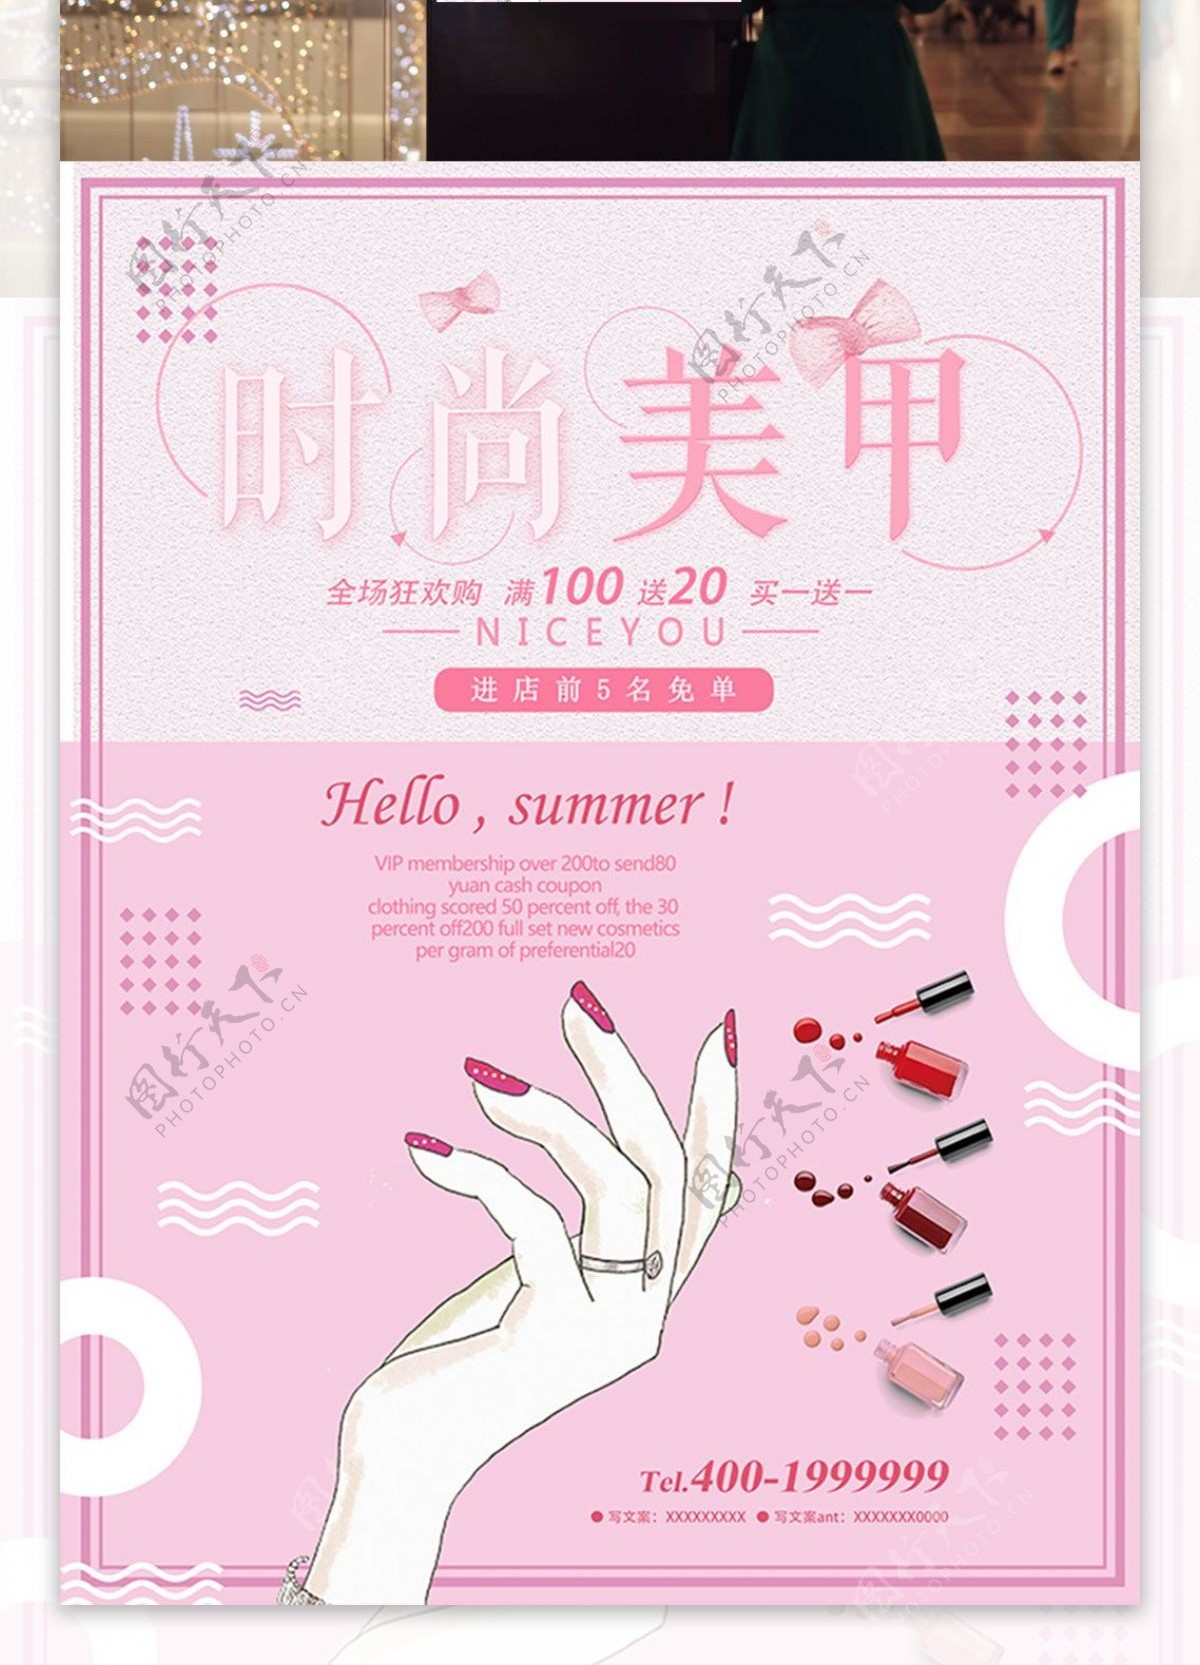 粉色美甲美容时尚手绘促销宣传海报